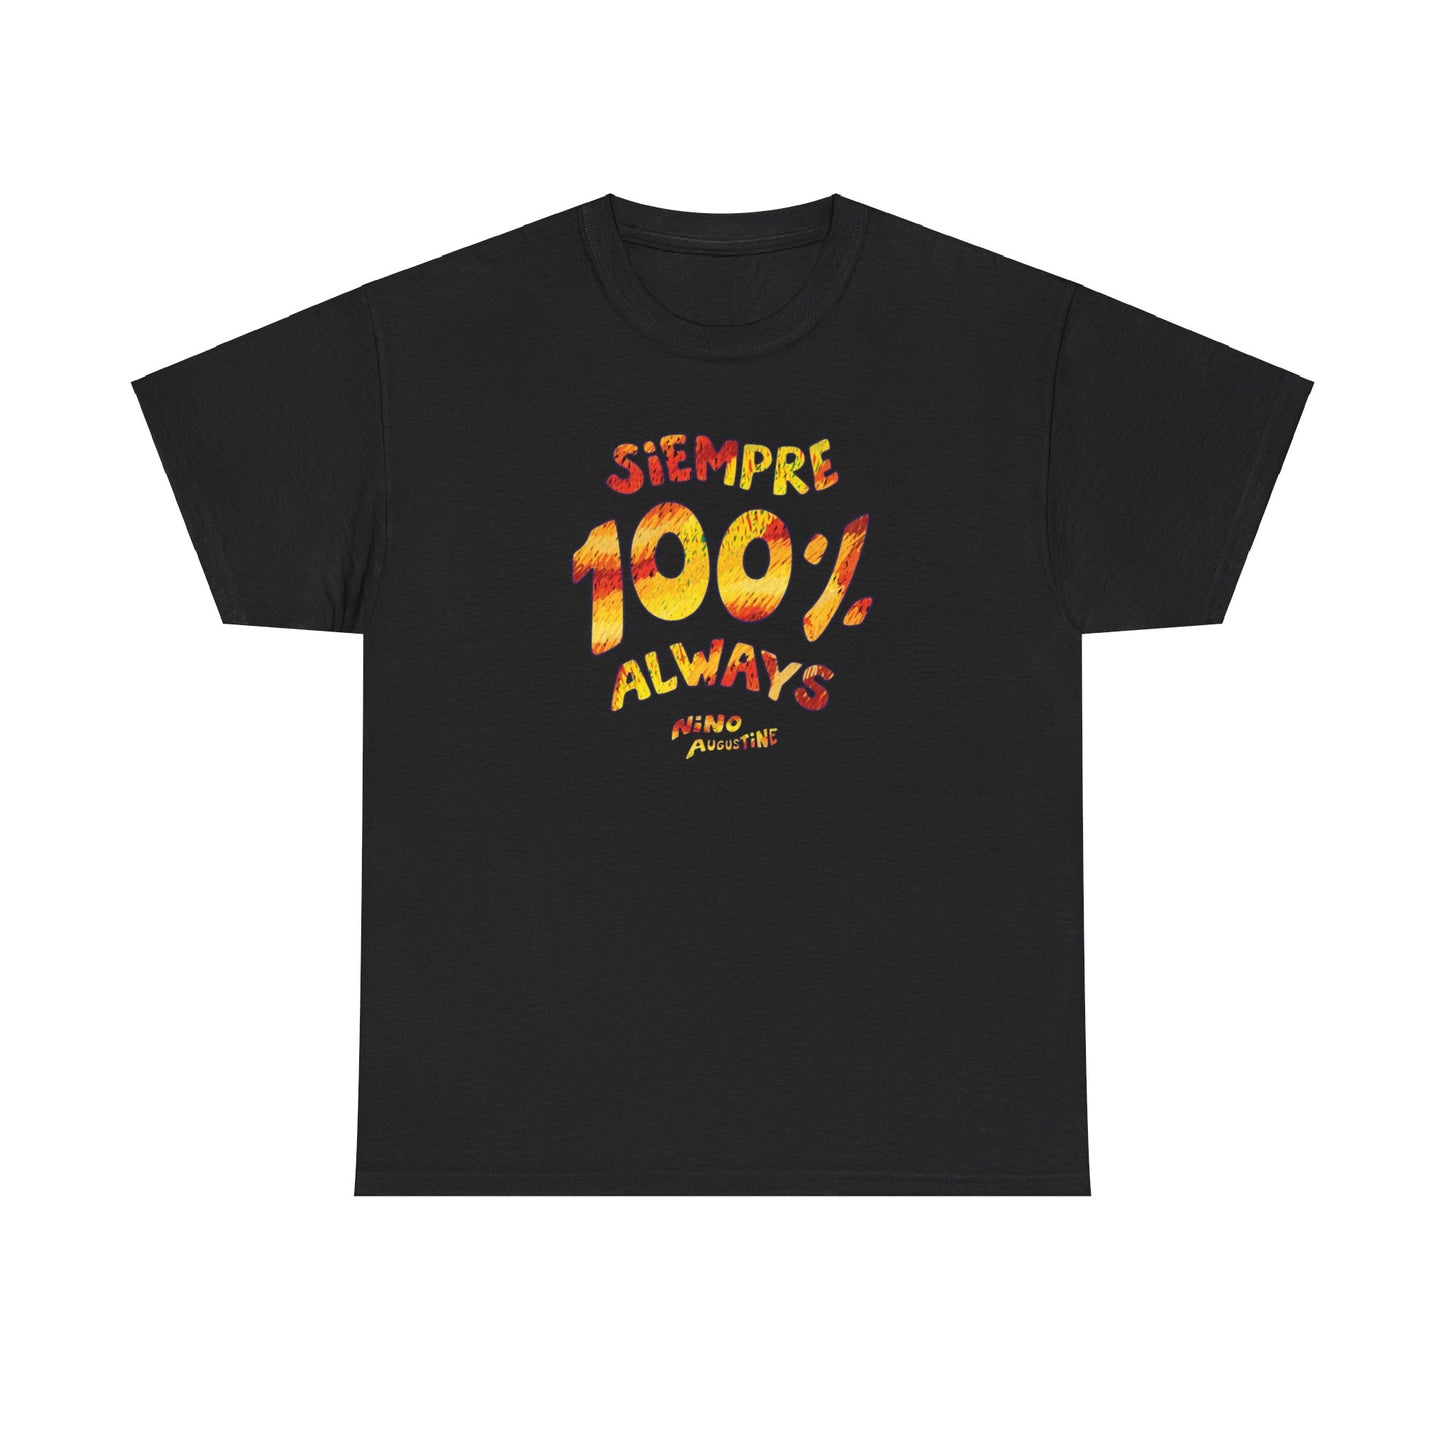 100% Always/Siempre T-Shirt